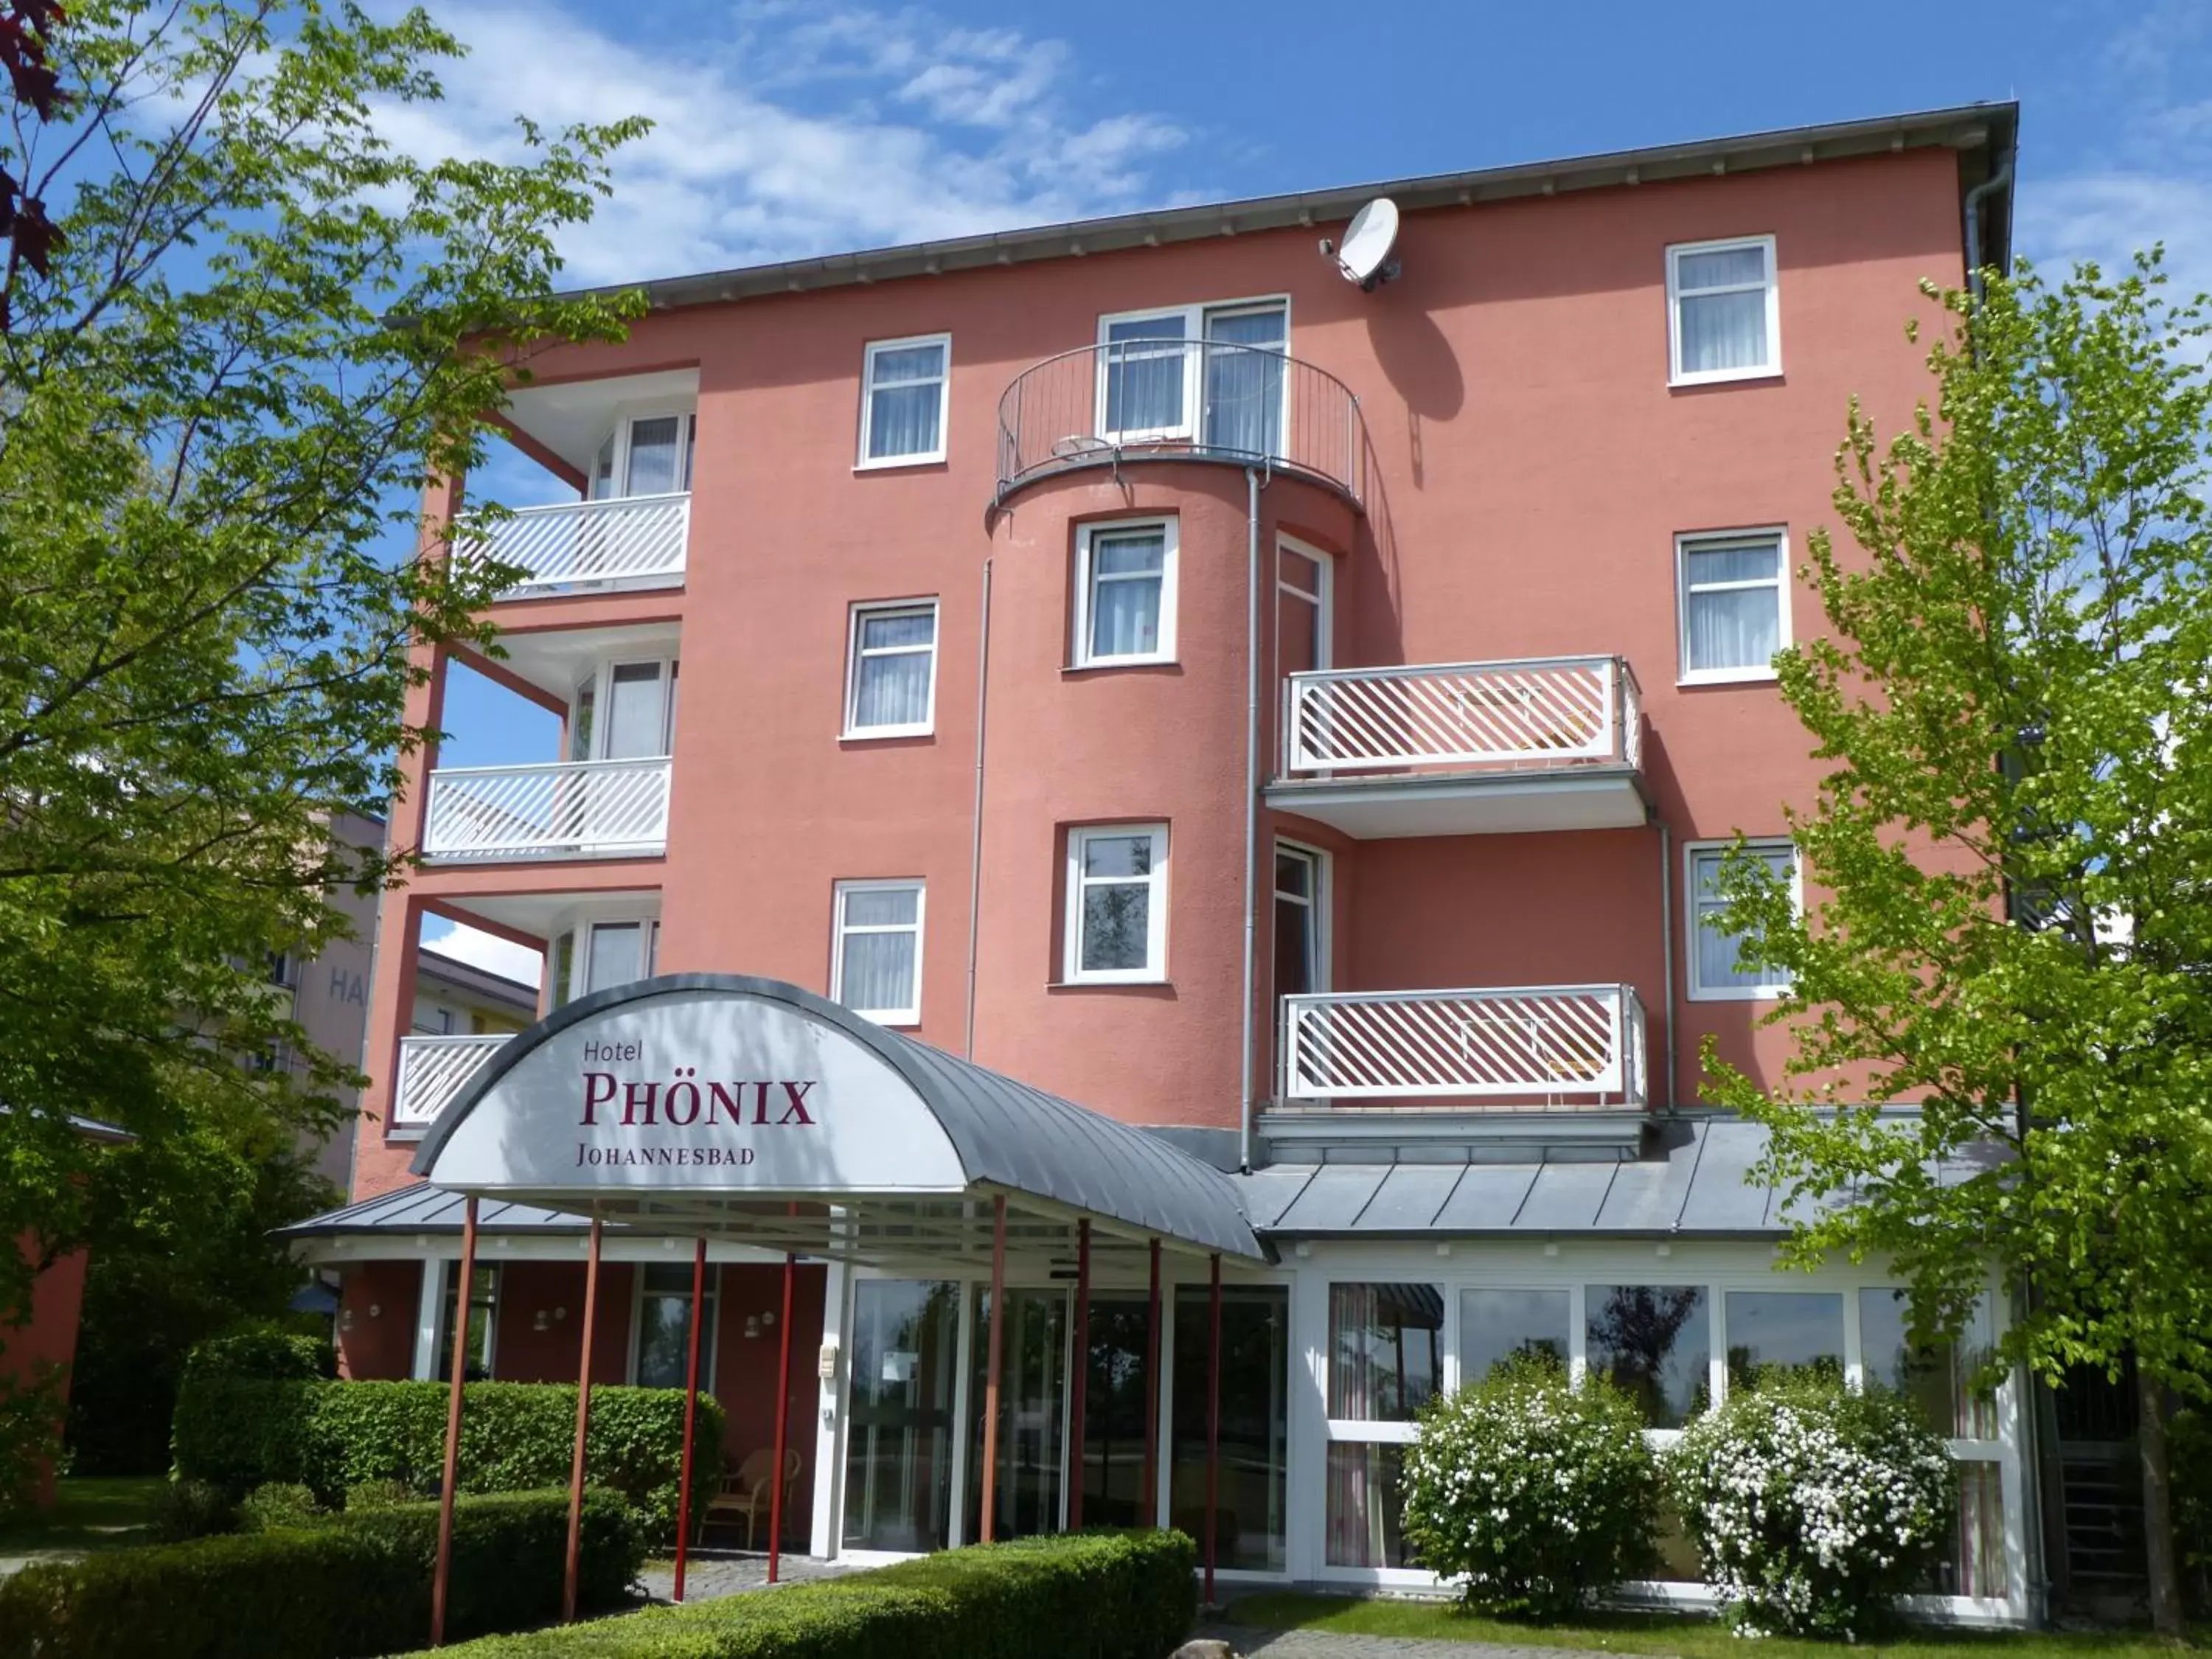 Facade/entrance in Johannesbad Hotel Phönix